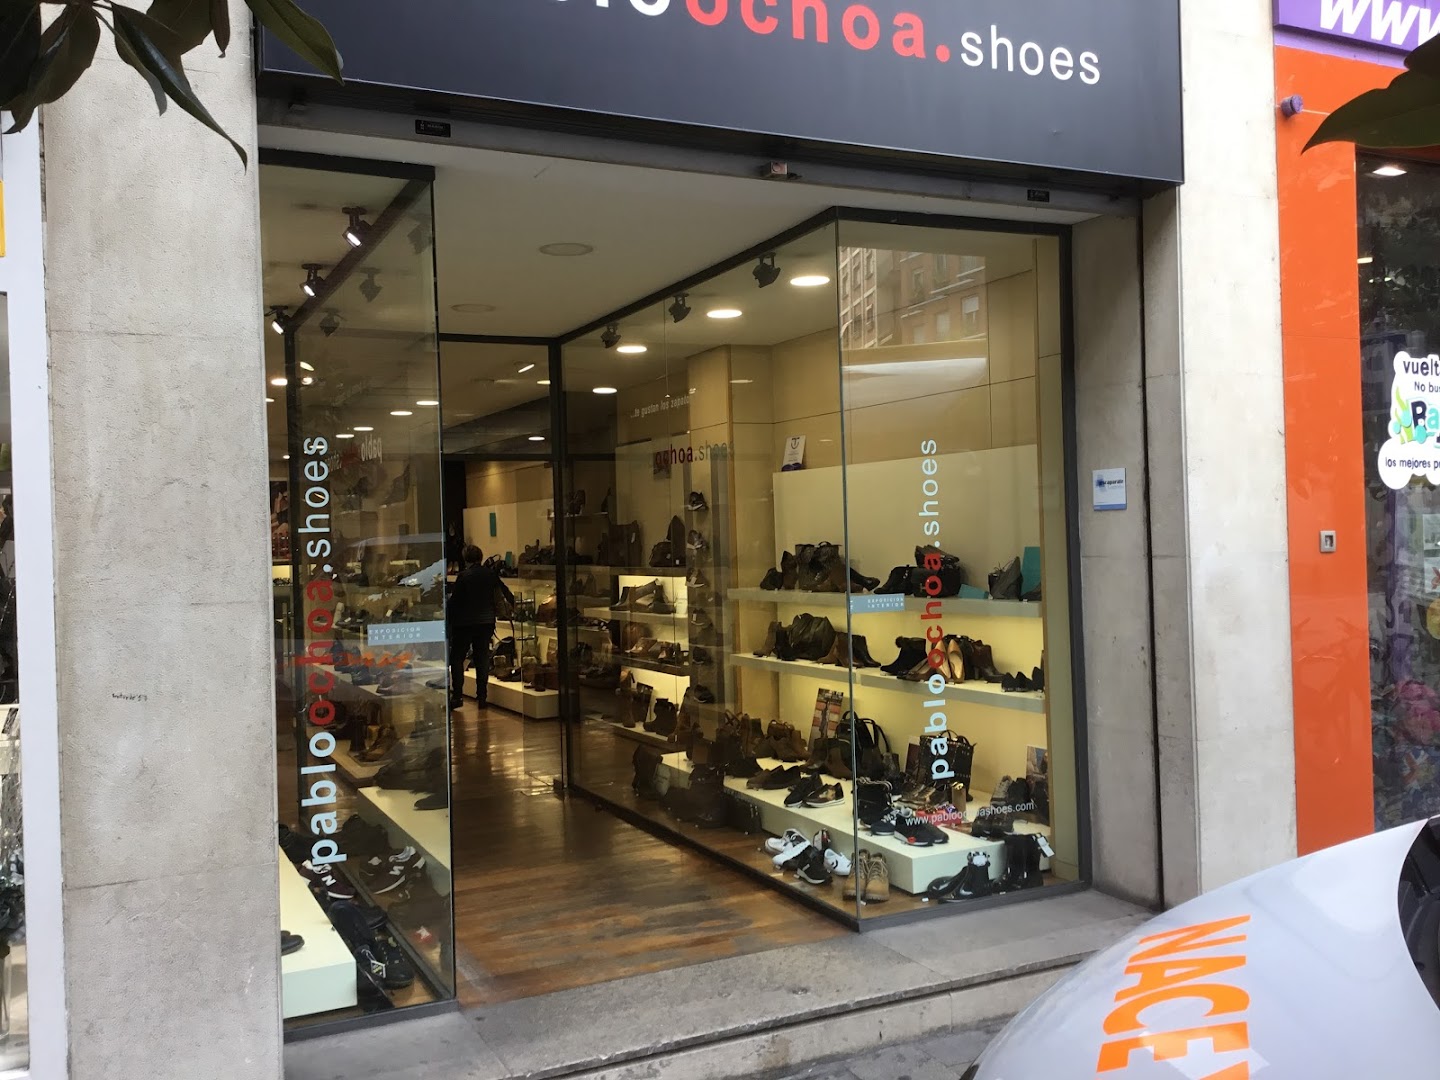 pabloochoa.shoes